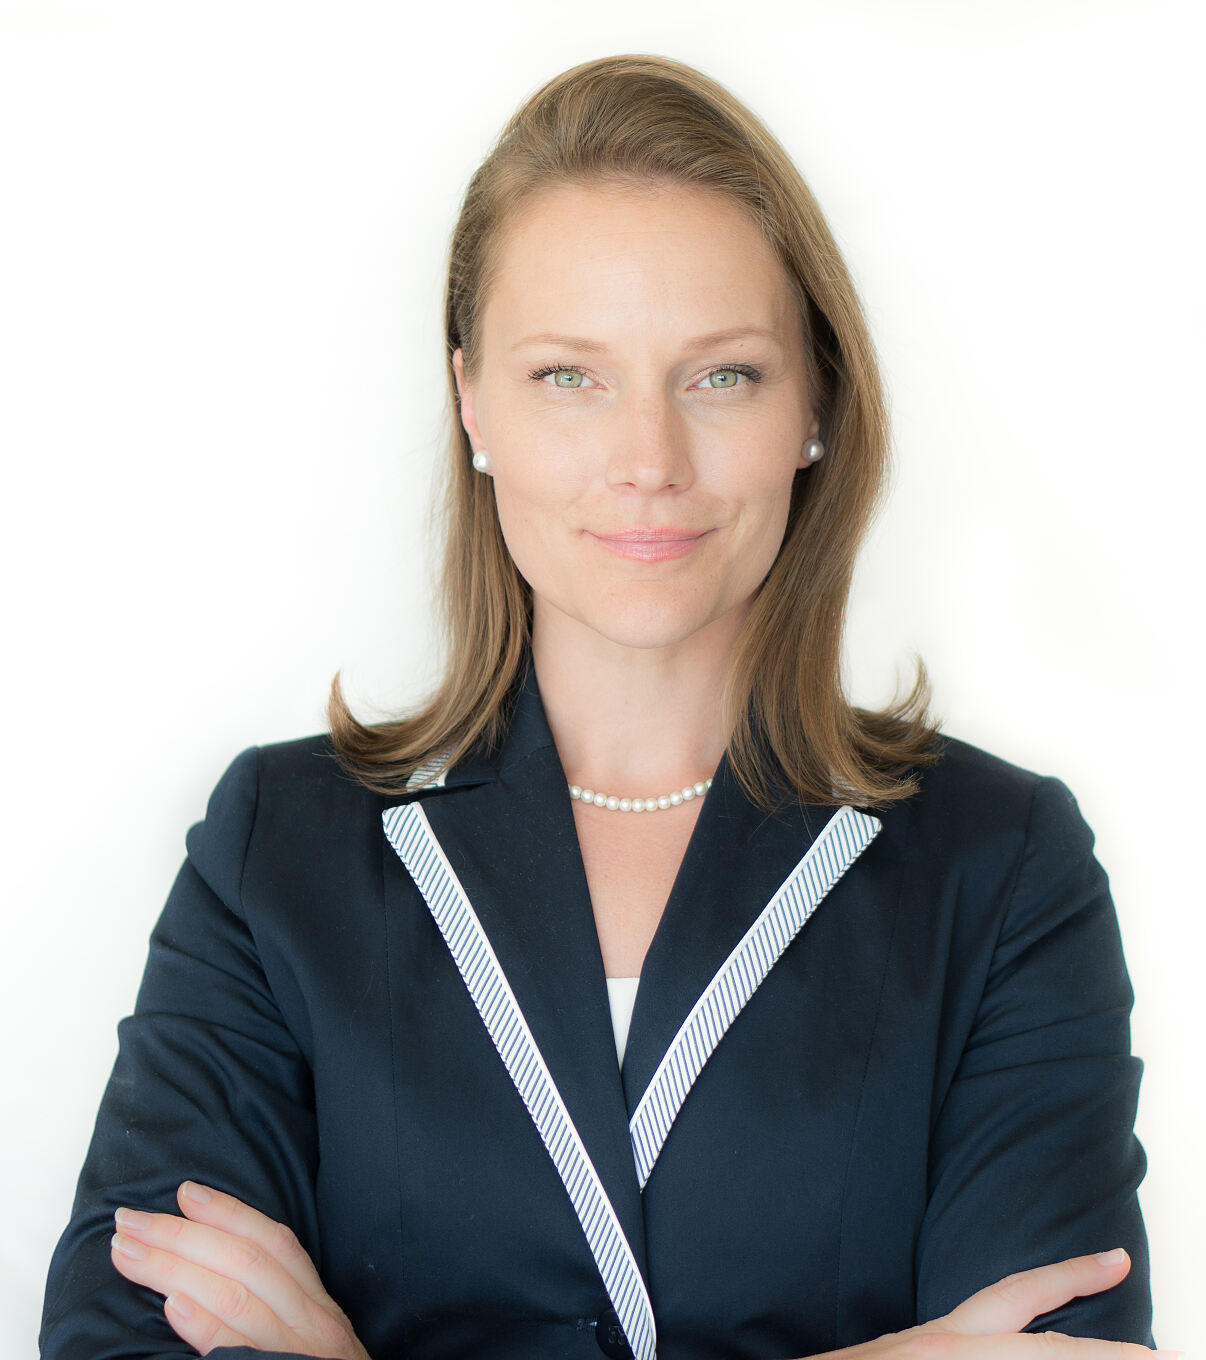 Neues Kapitel in der Führungsebene: Dipl. Ing. Petronela Altrichter wird COO bei Microsoft Österreich